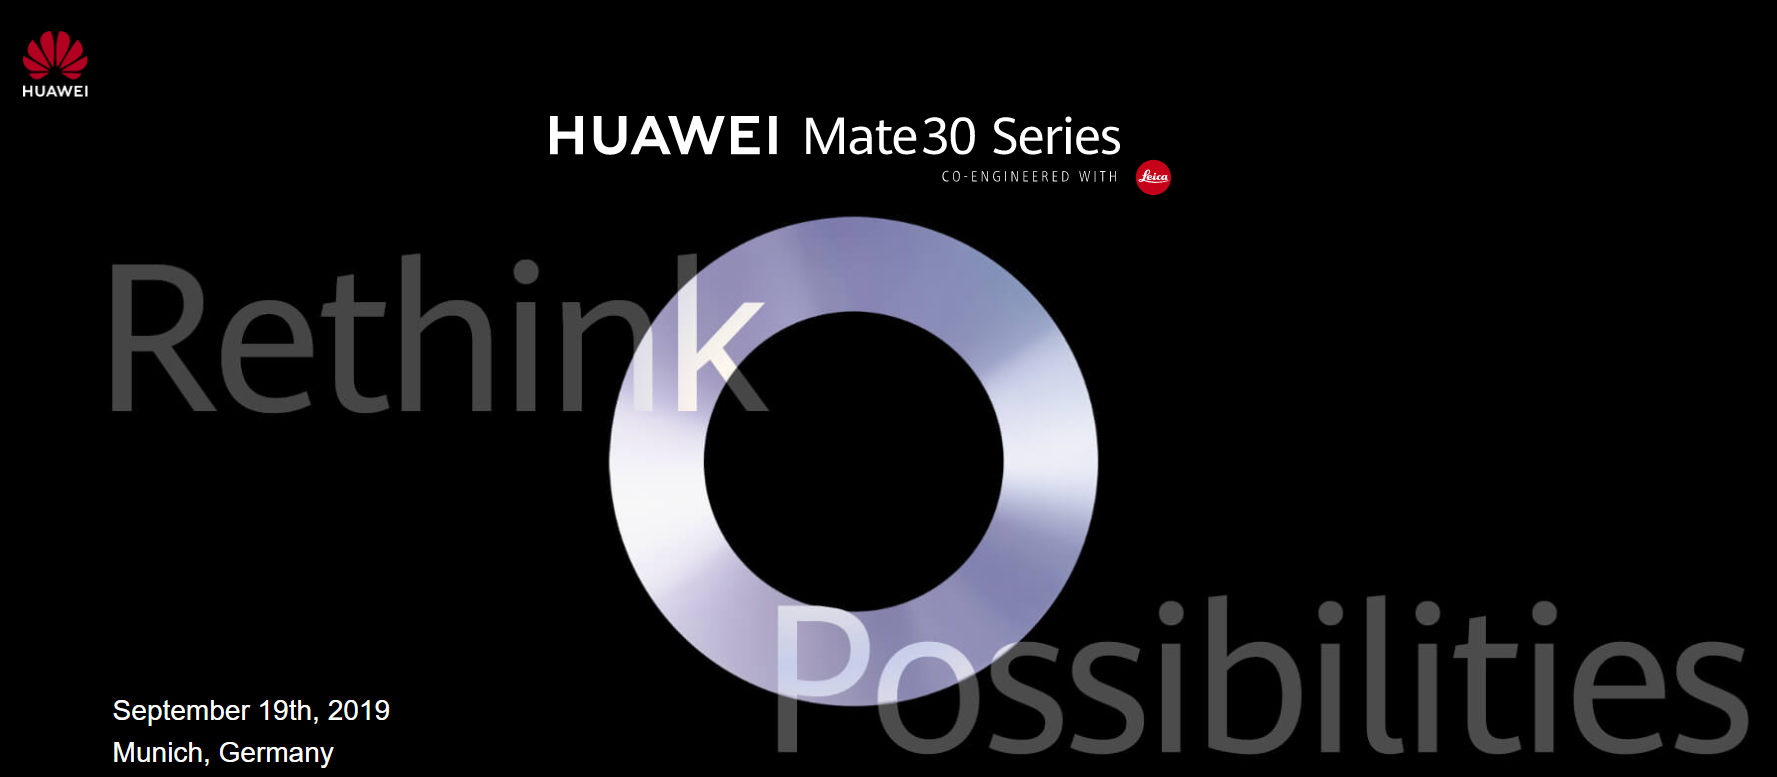 【快訊報報】華為 HUAWEI Mate30 系列新機 將在 9/19 德國慕尼黑發表 - 德國 - 科技狗 3C DOG